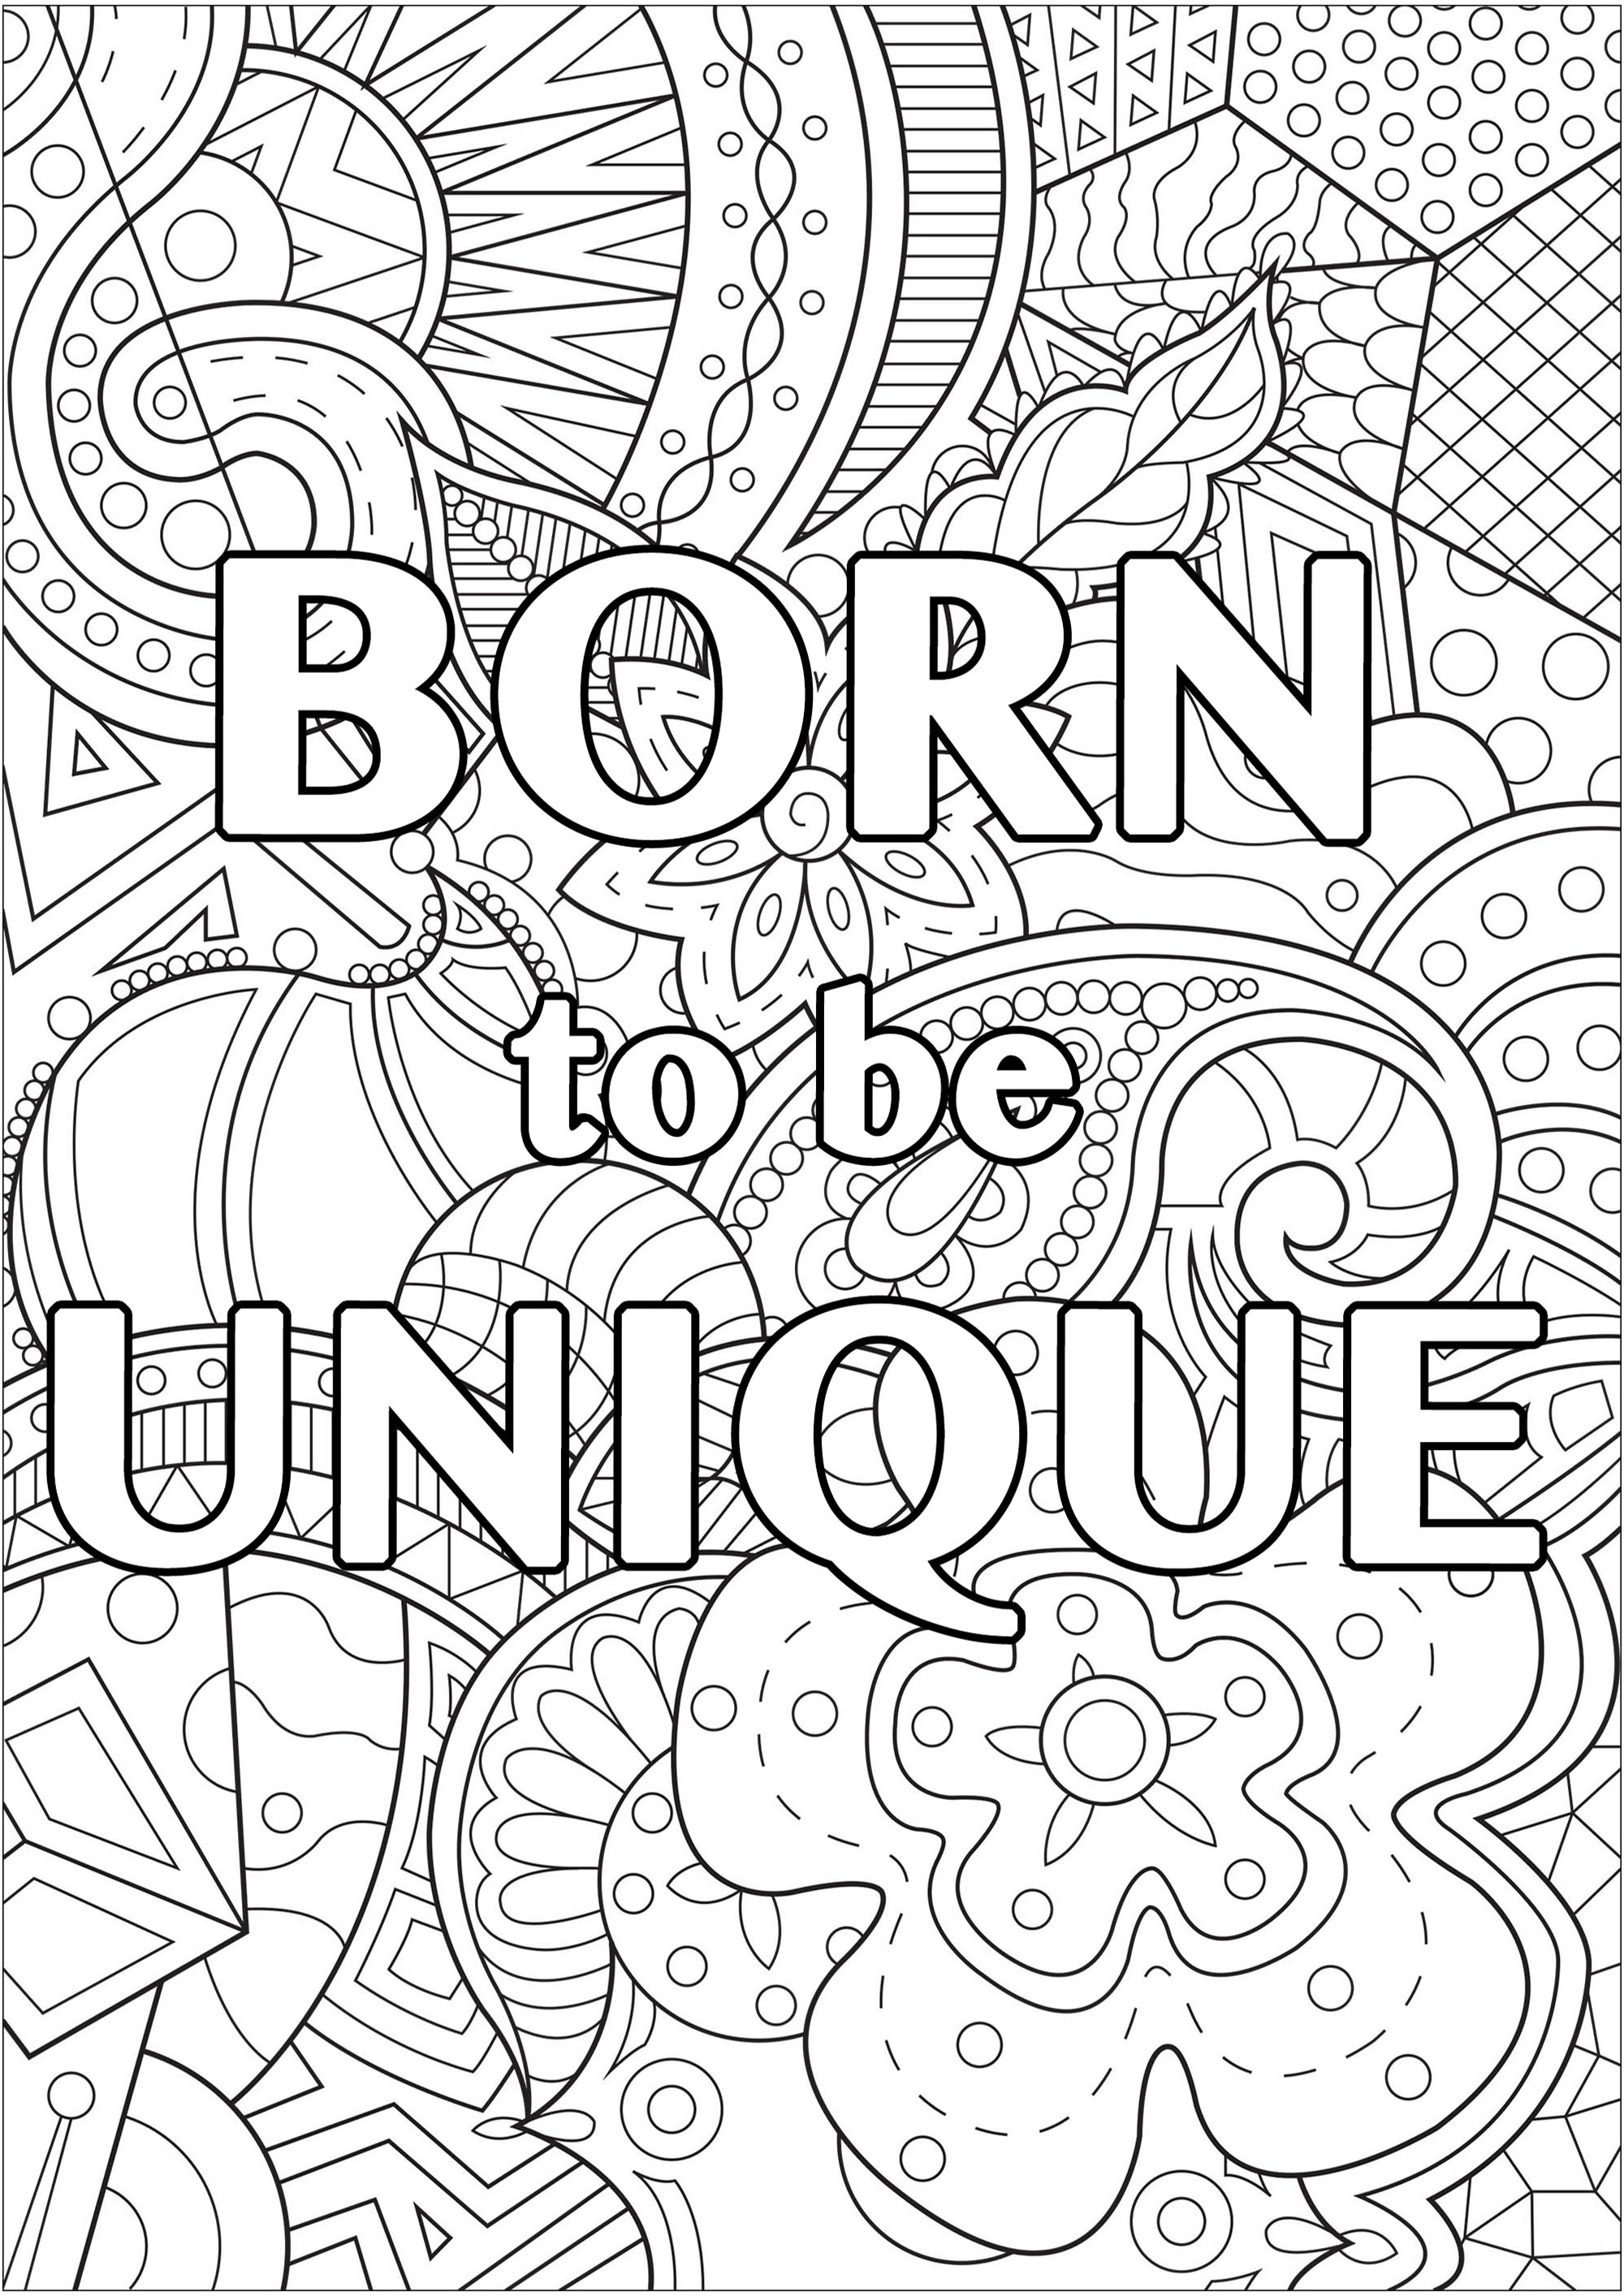 Born to be unique (Né pour être unique)